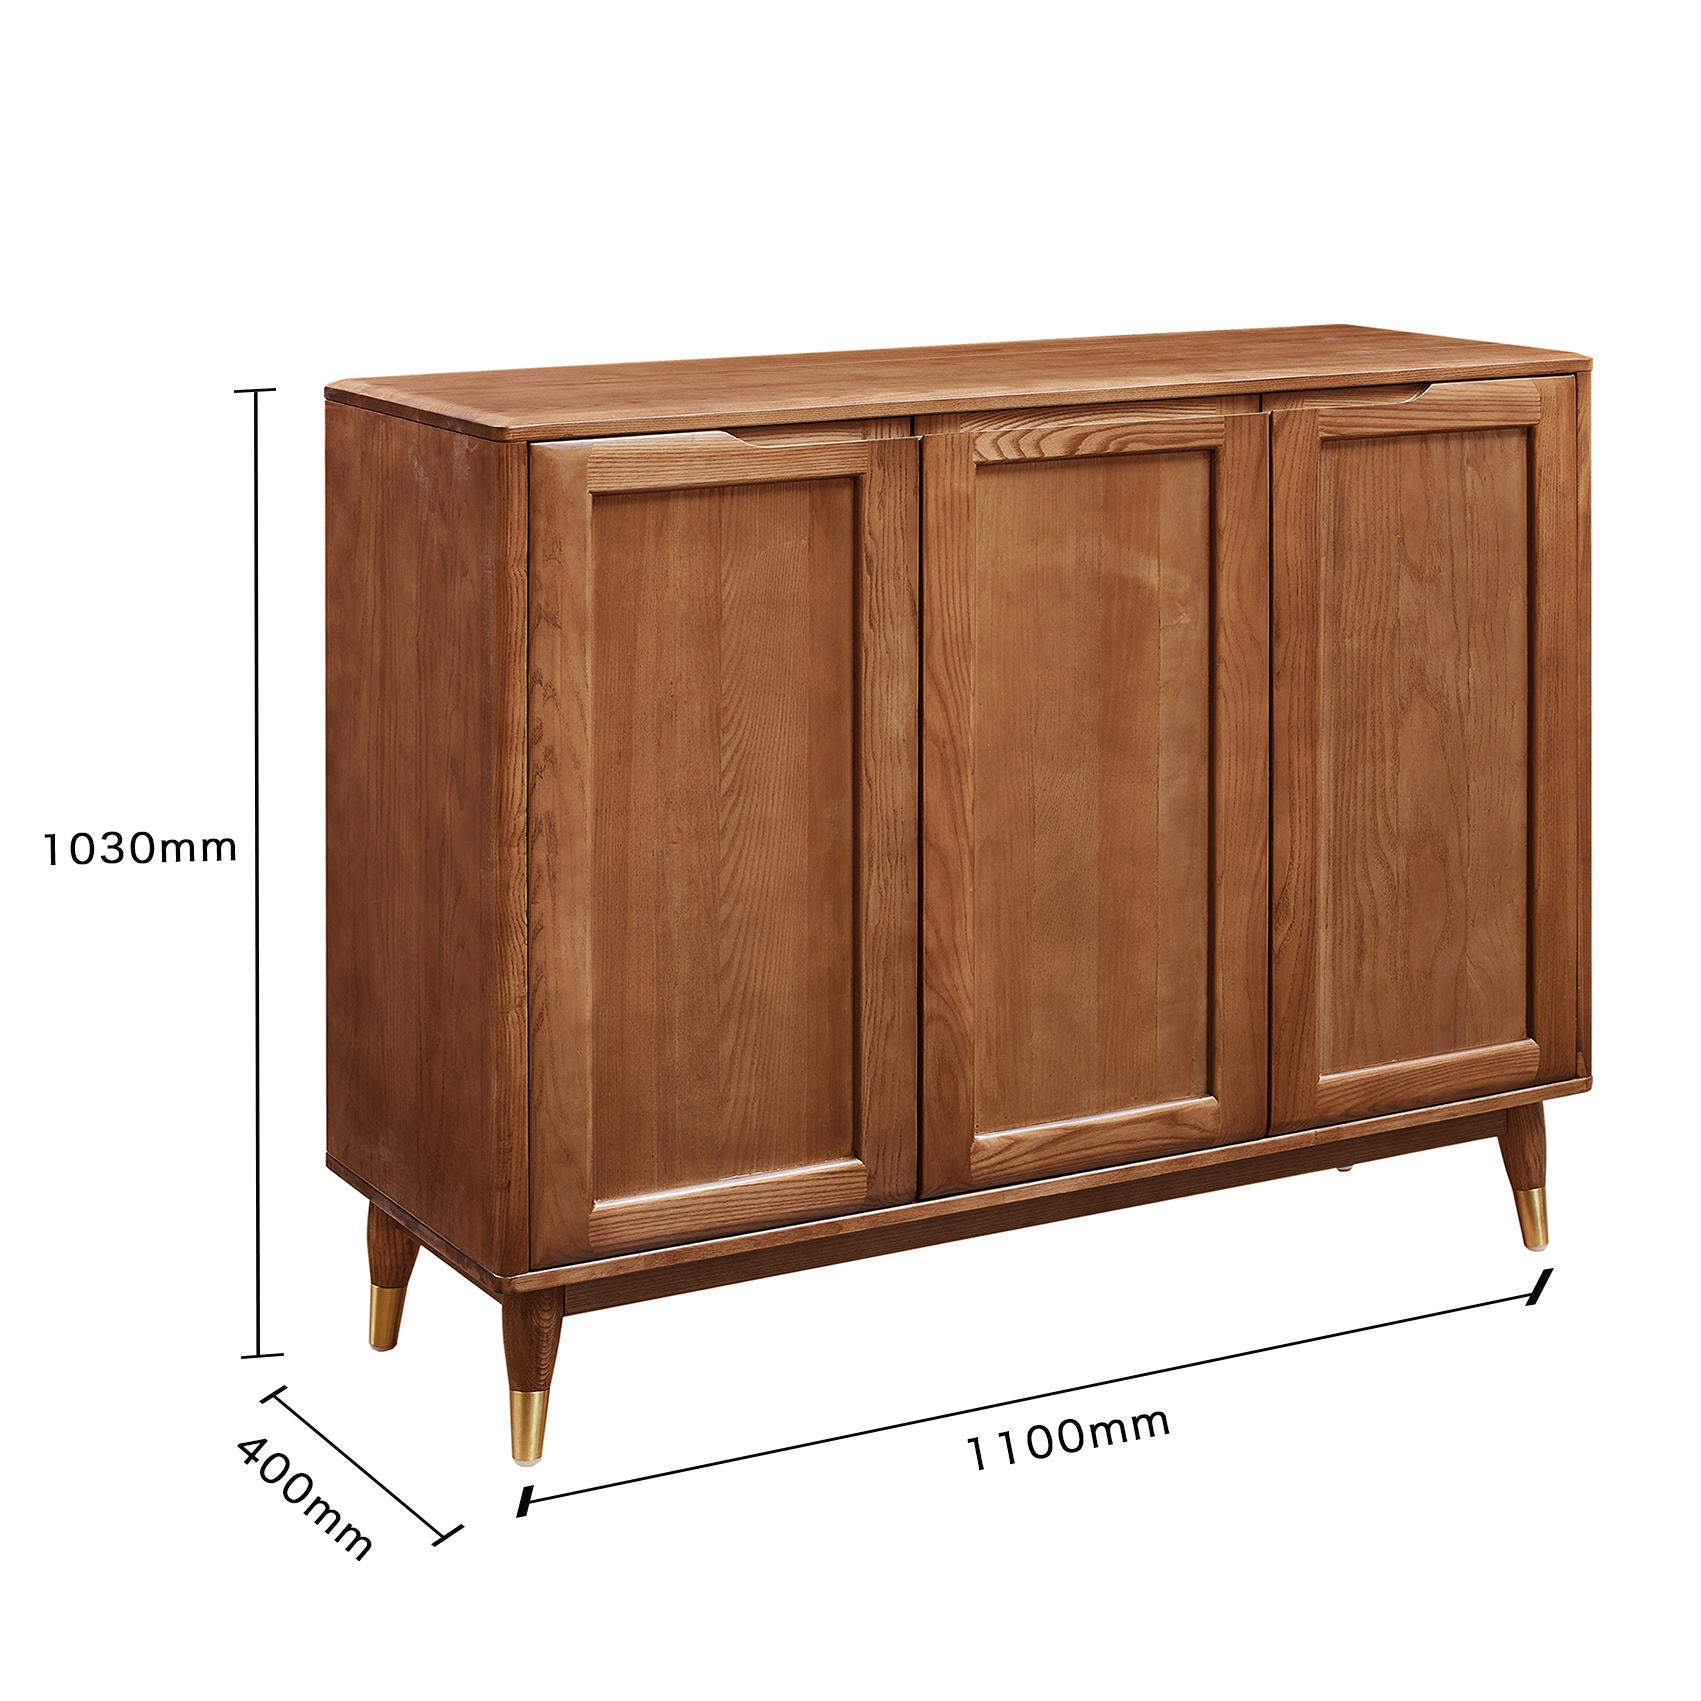 تصفح الان خزانة خشبية مع تصميم بسيط وانيق اونلاين | بيوت